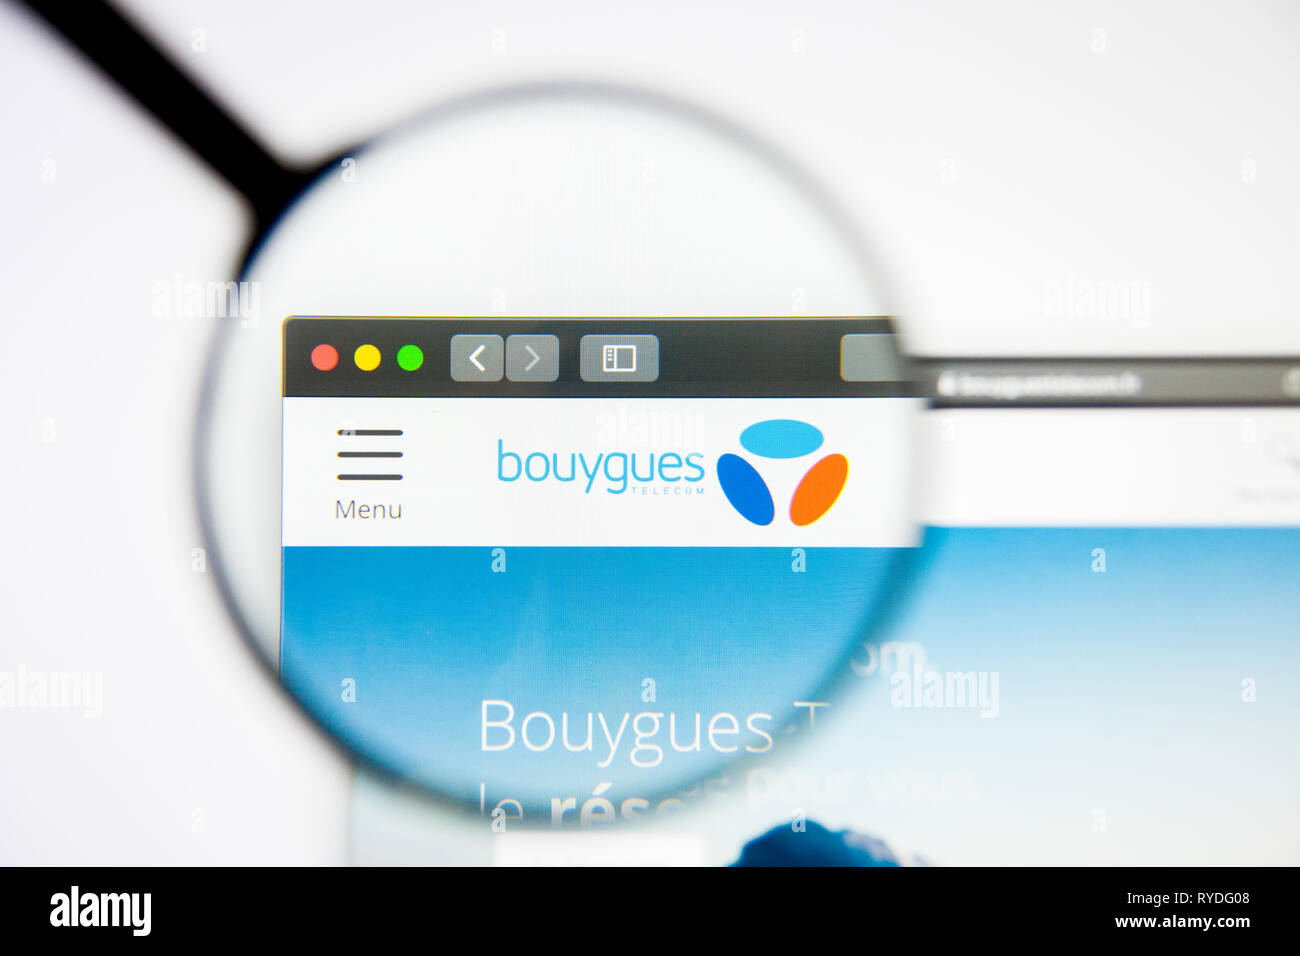 Los Angeles, Californie, USA - 5 mars 2019 : Bouygues accueil du site. Logo Bouygues visible sur l'écran d'affichage, de rédaction d'illustration Banque D'Images